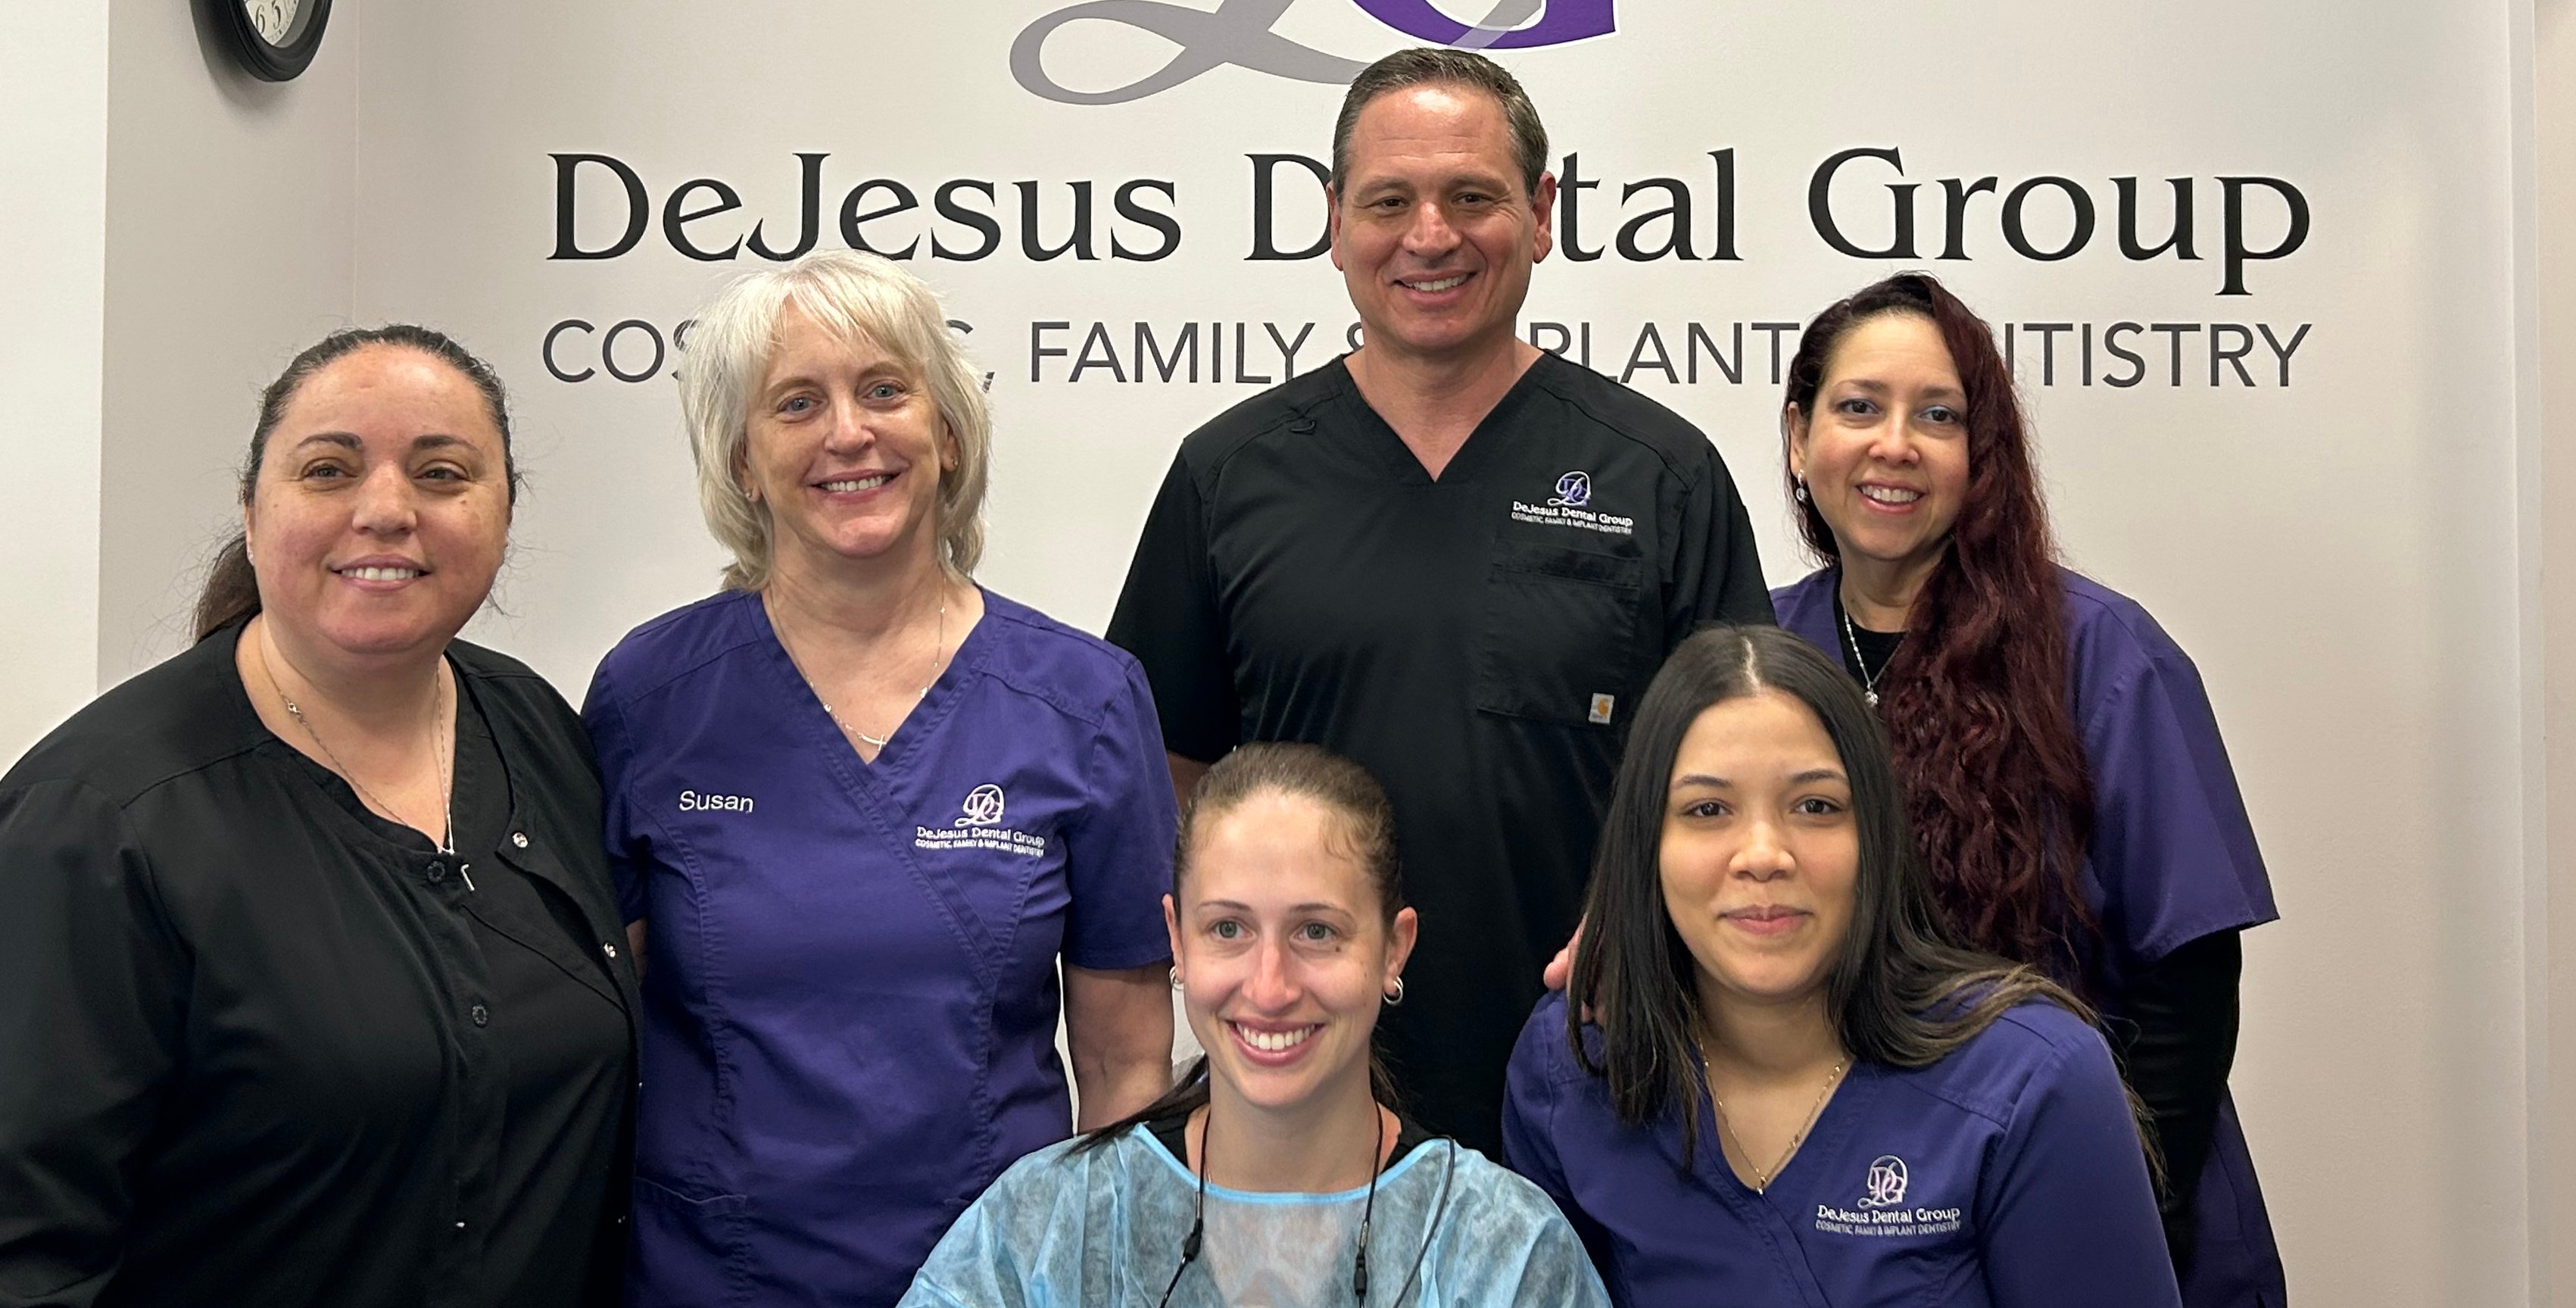 dr-dejesus-dental-group